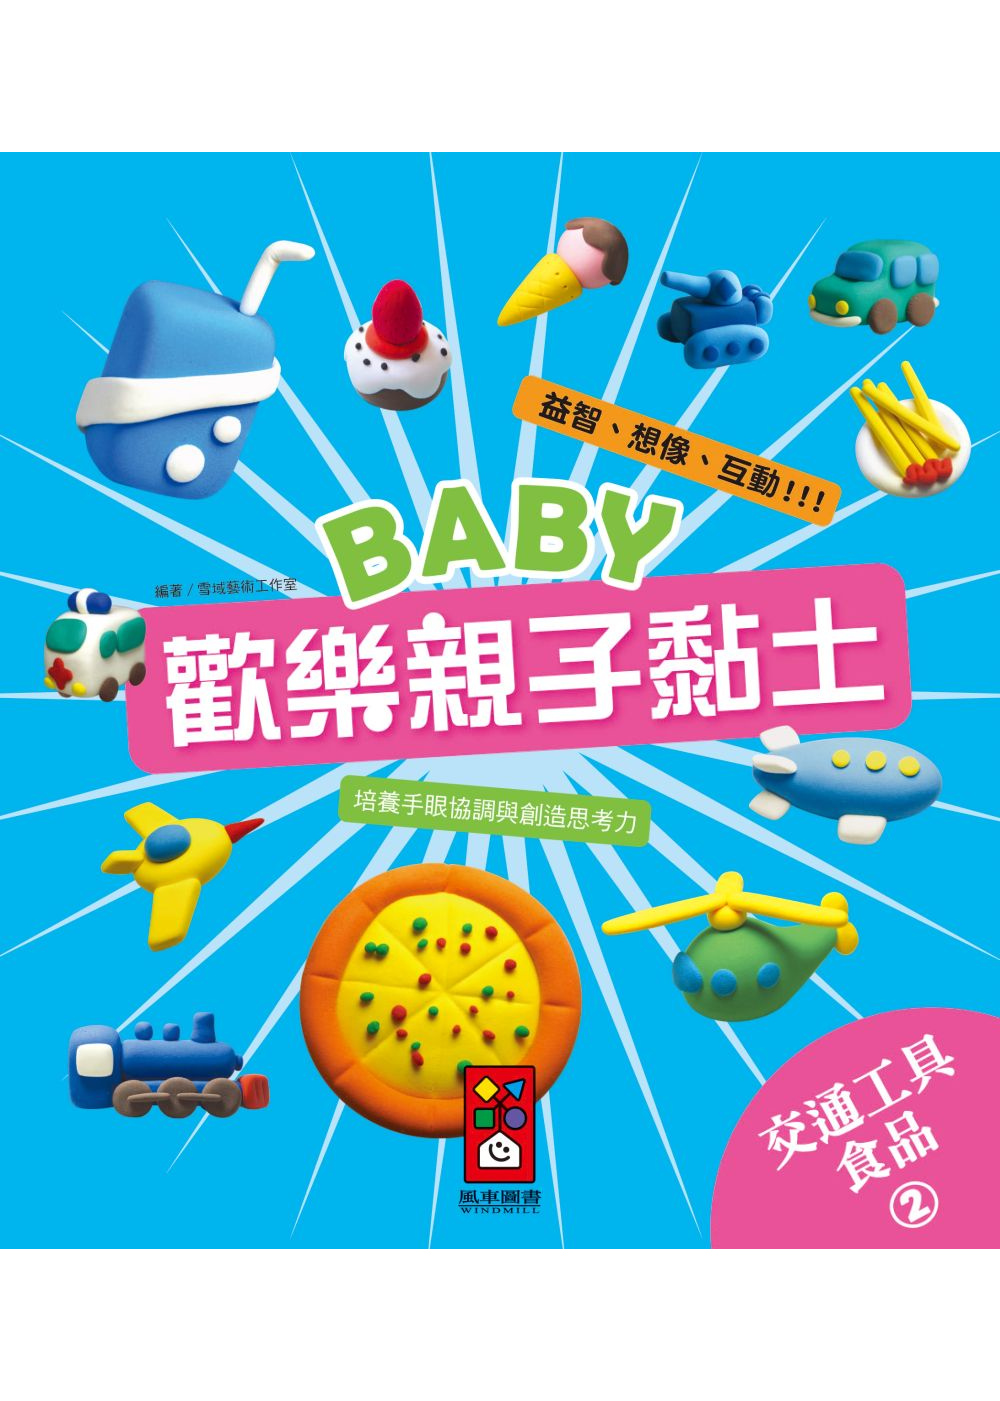 交通工具、食品2：Baby歡樂親子黏土(限台灣)